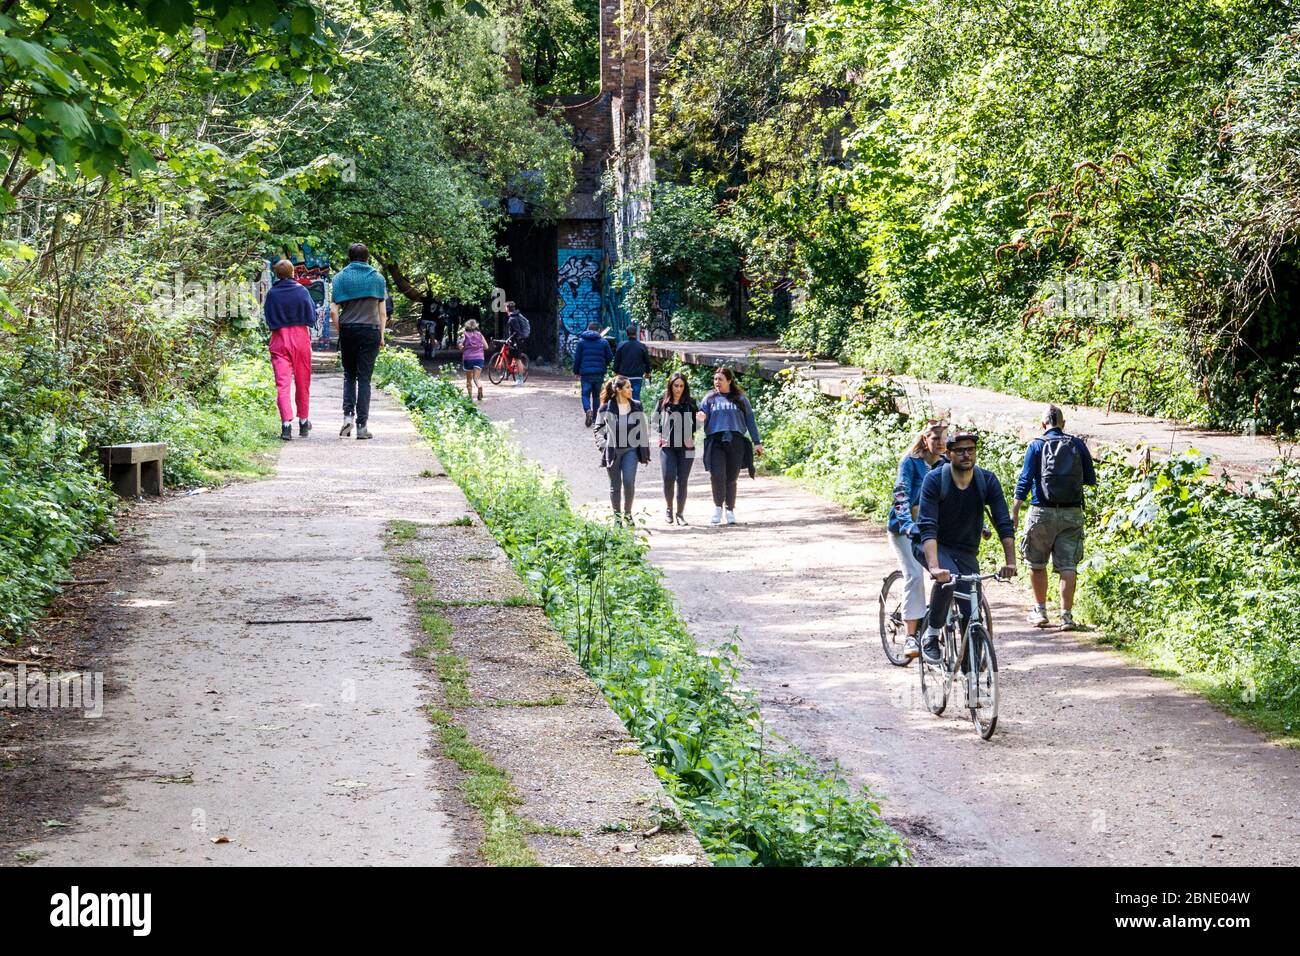 Marcheurs, joggeurs et cyclistes s'entraînant et profitant du temps chaud sur Parkland Walk pendant le confinement de la pandémie du coronavirus, Londres, Royaume-Uni Banque D'Images